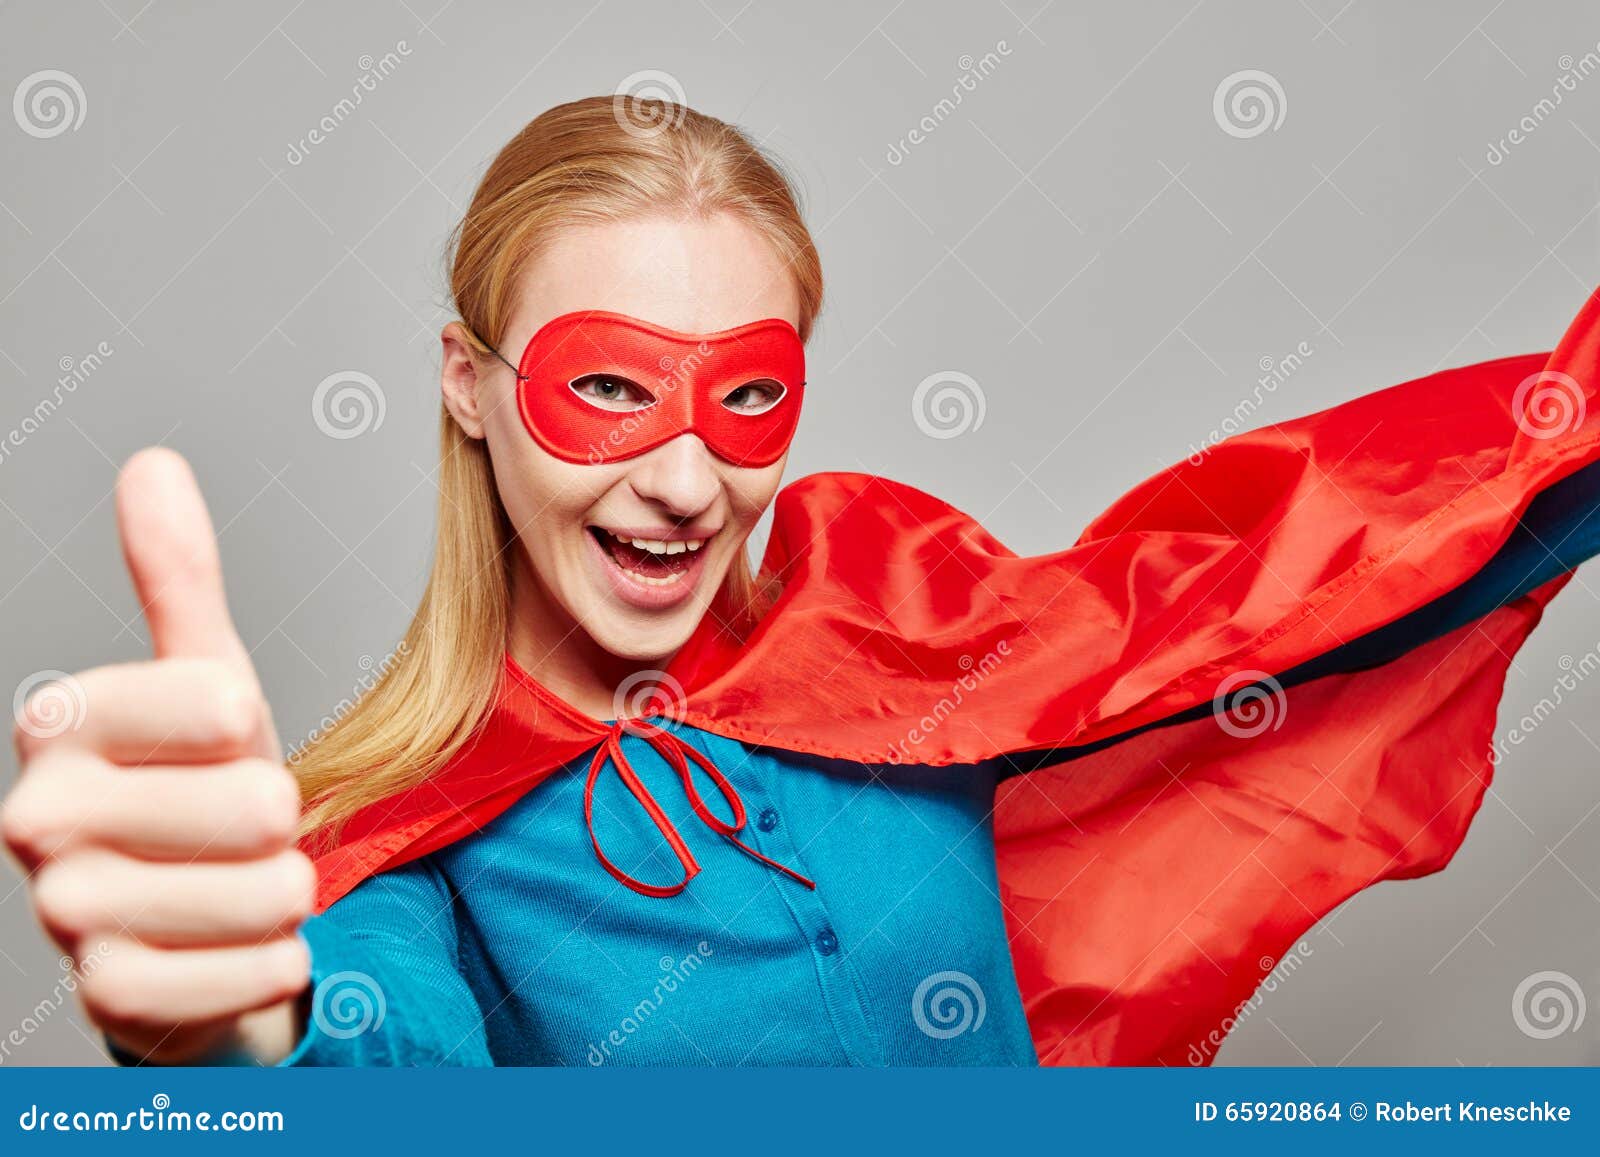 De vrouw kleedde zich als superhero met haar omhoog duim. De glimlachende vrouw kleedde zich omhoog als superhero tegenhoudend haar duim